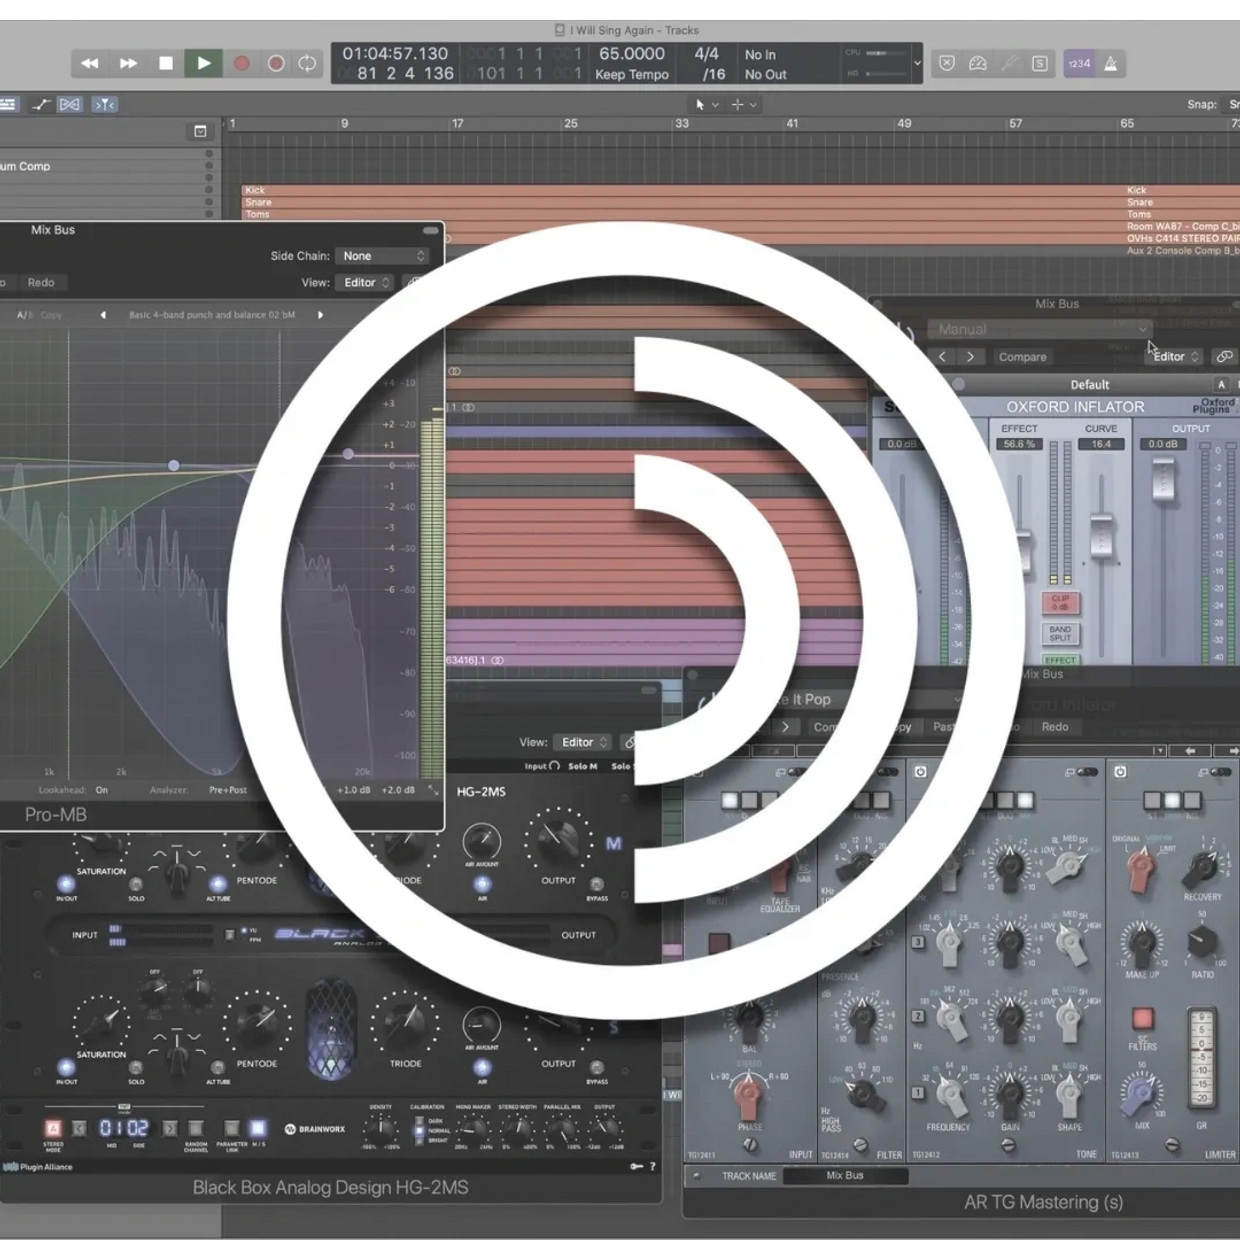 Audio Plugins - The Echo Studio